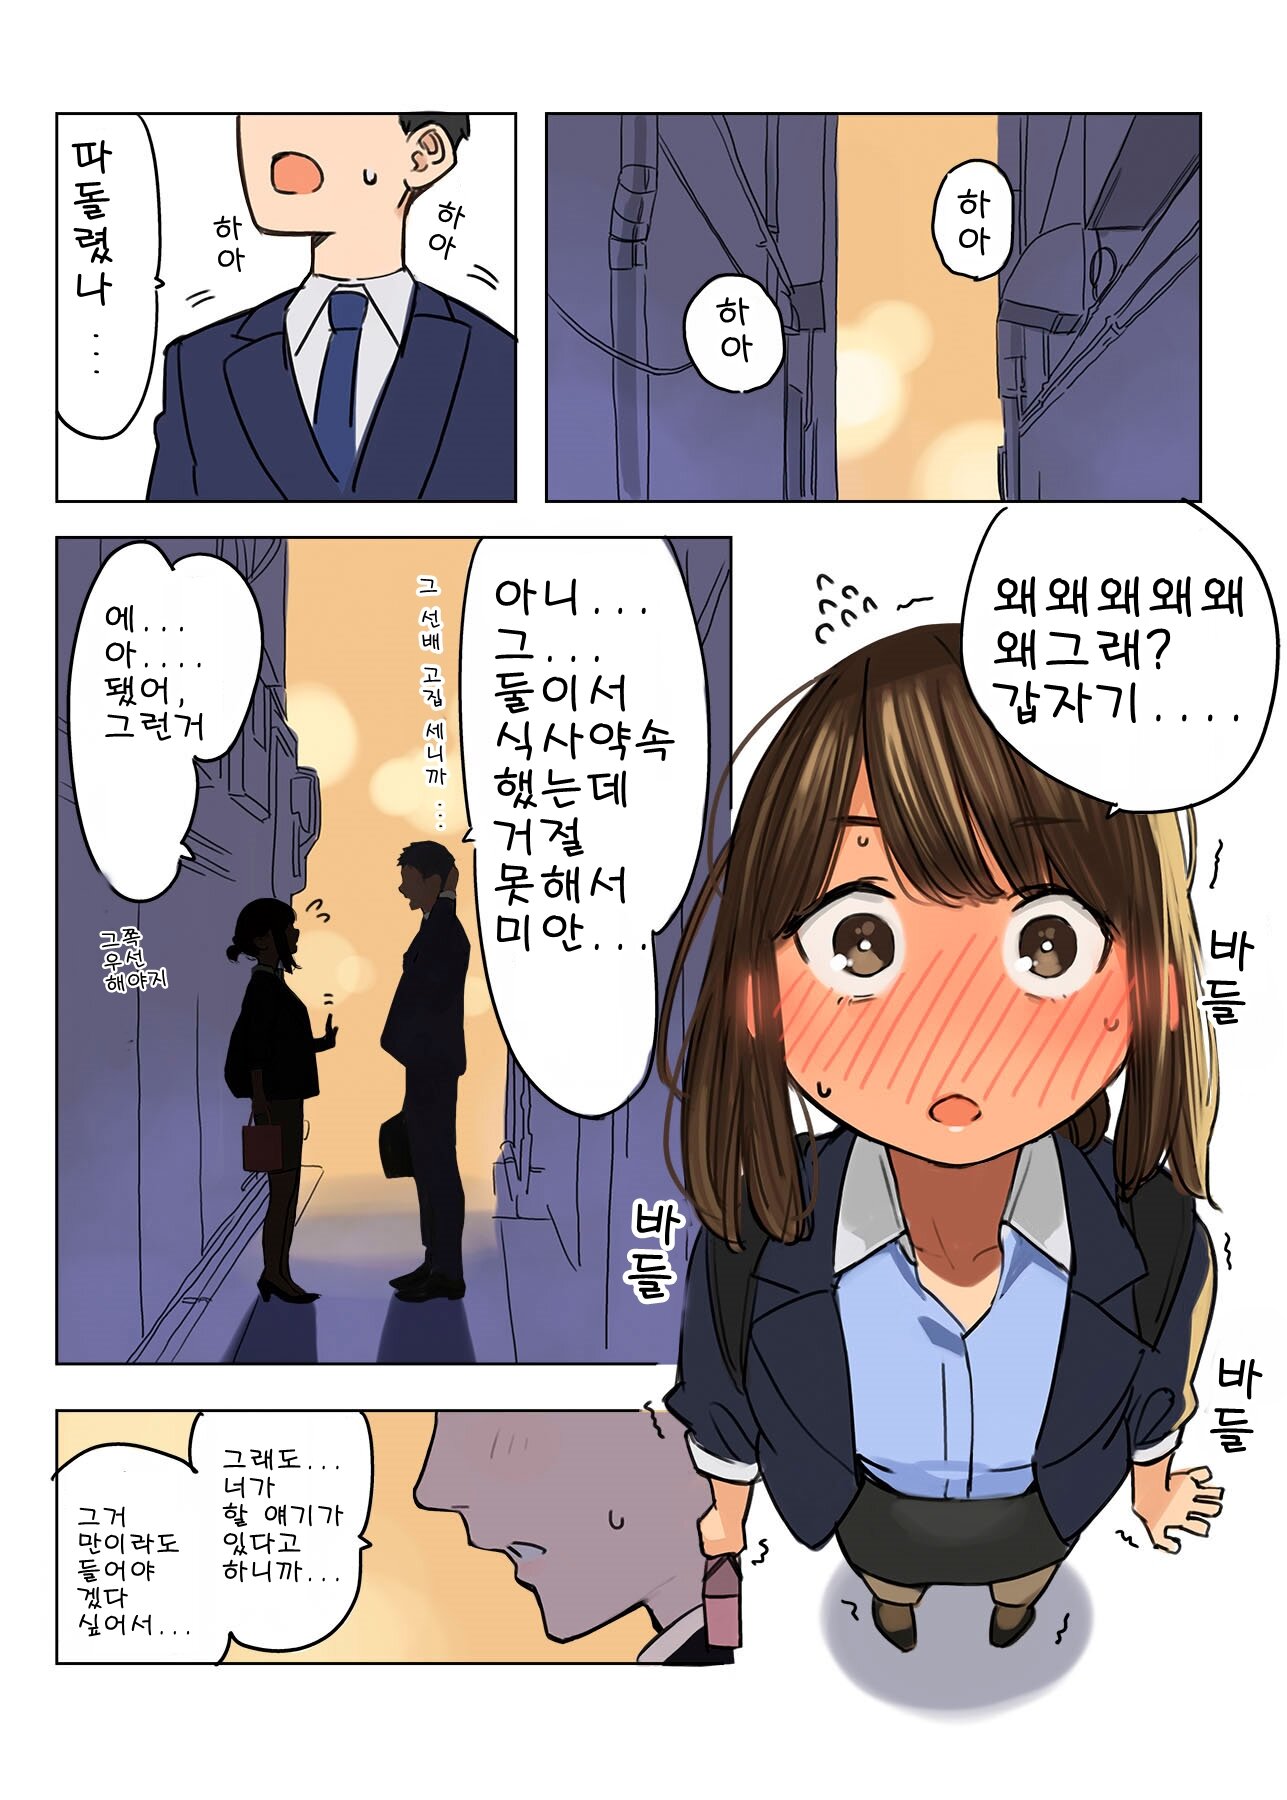 ㅎㅂ)힘내라 동기짱 5화 - 대학선배의 난입(1)